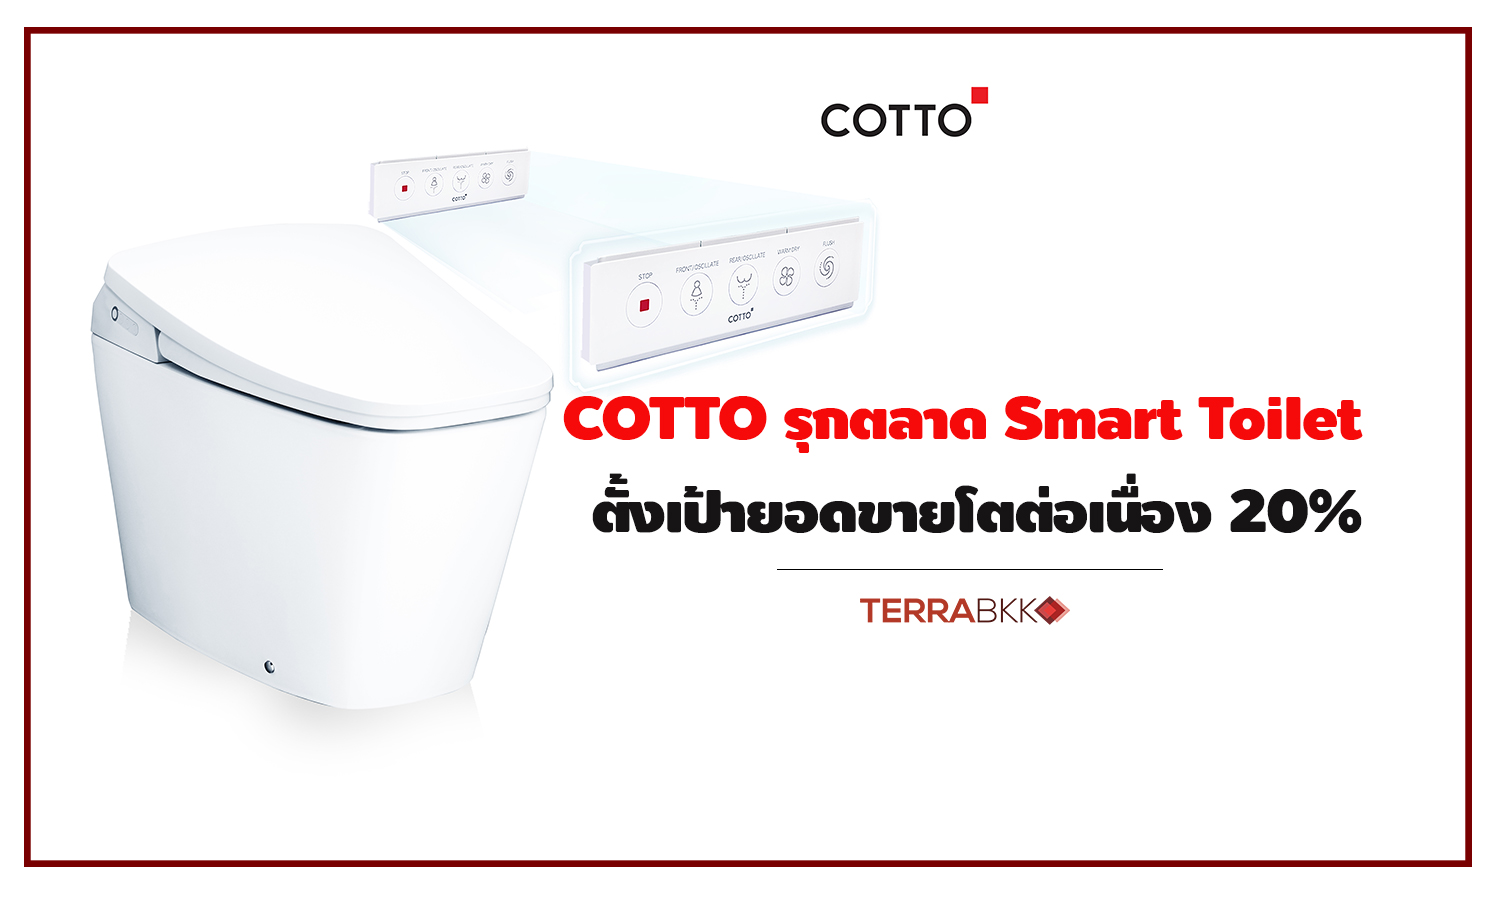 คอตโต้ รุกตลาด Smart Toilet ตั้งเป้ายอดขายโต 20%